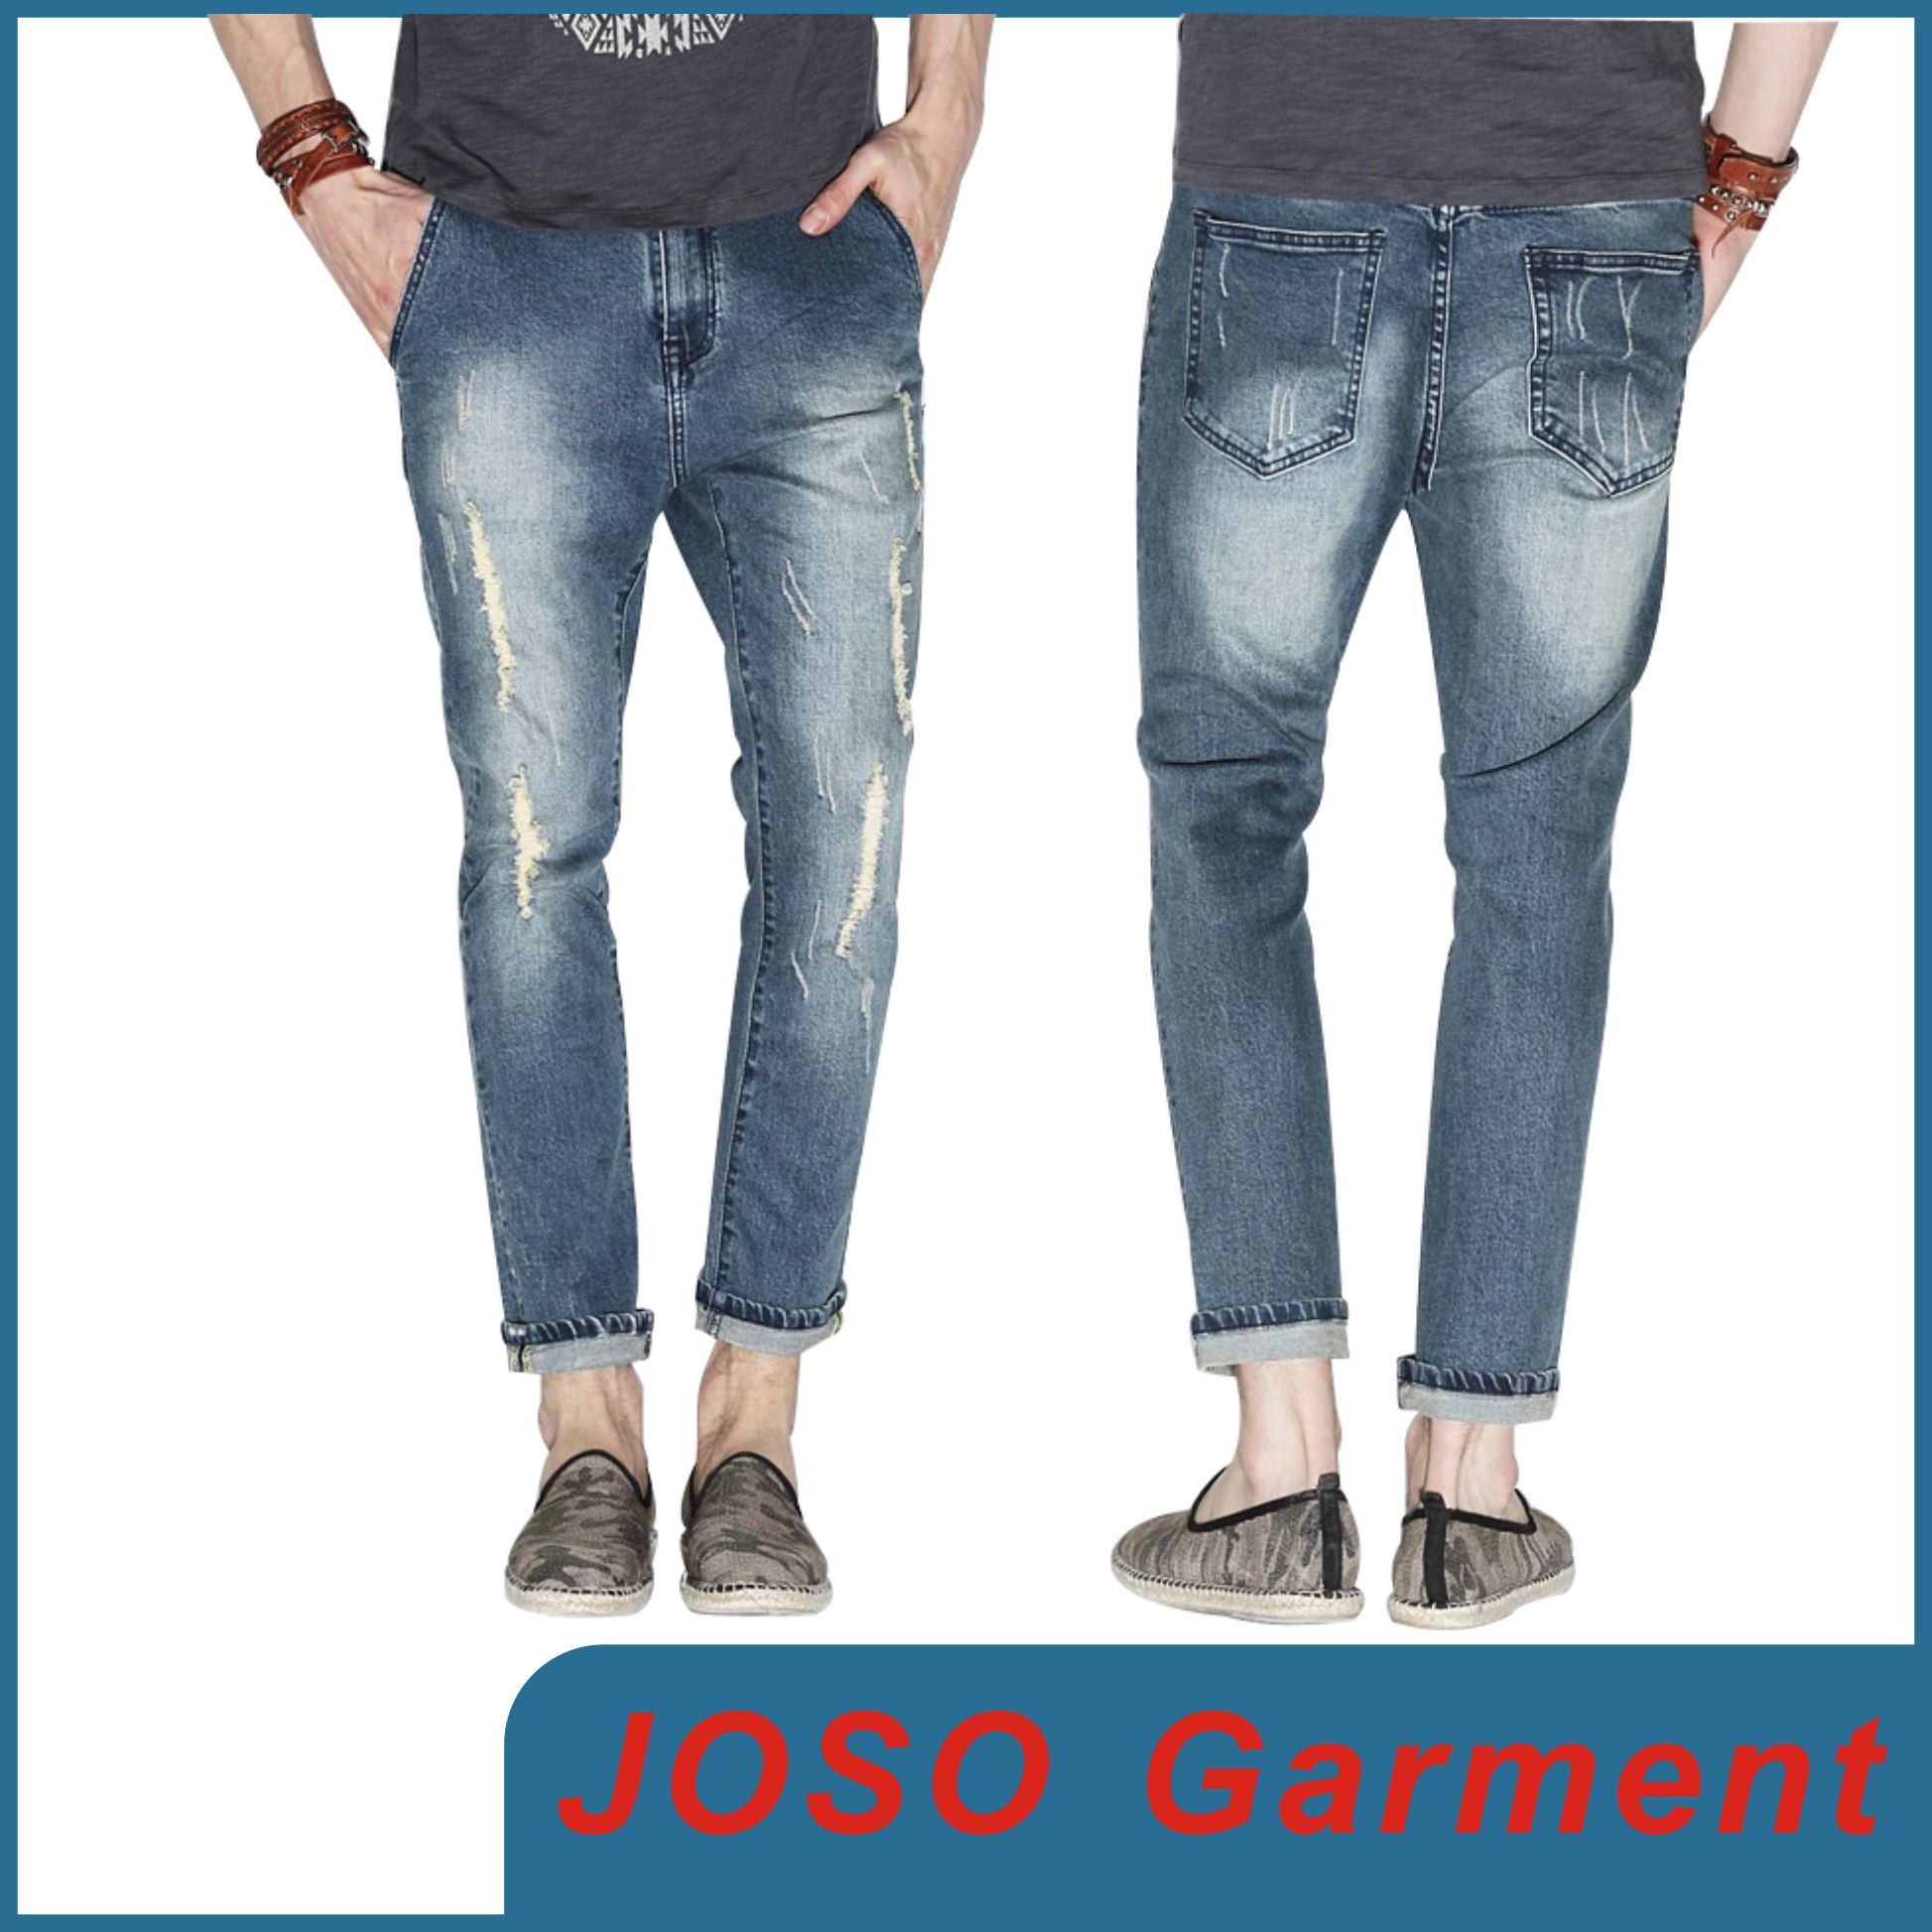 Men Fashion Denim Ripped Jeans (JC3064)